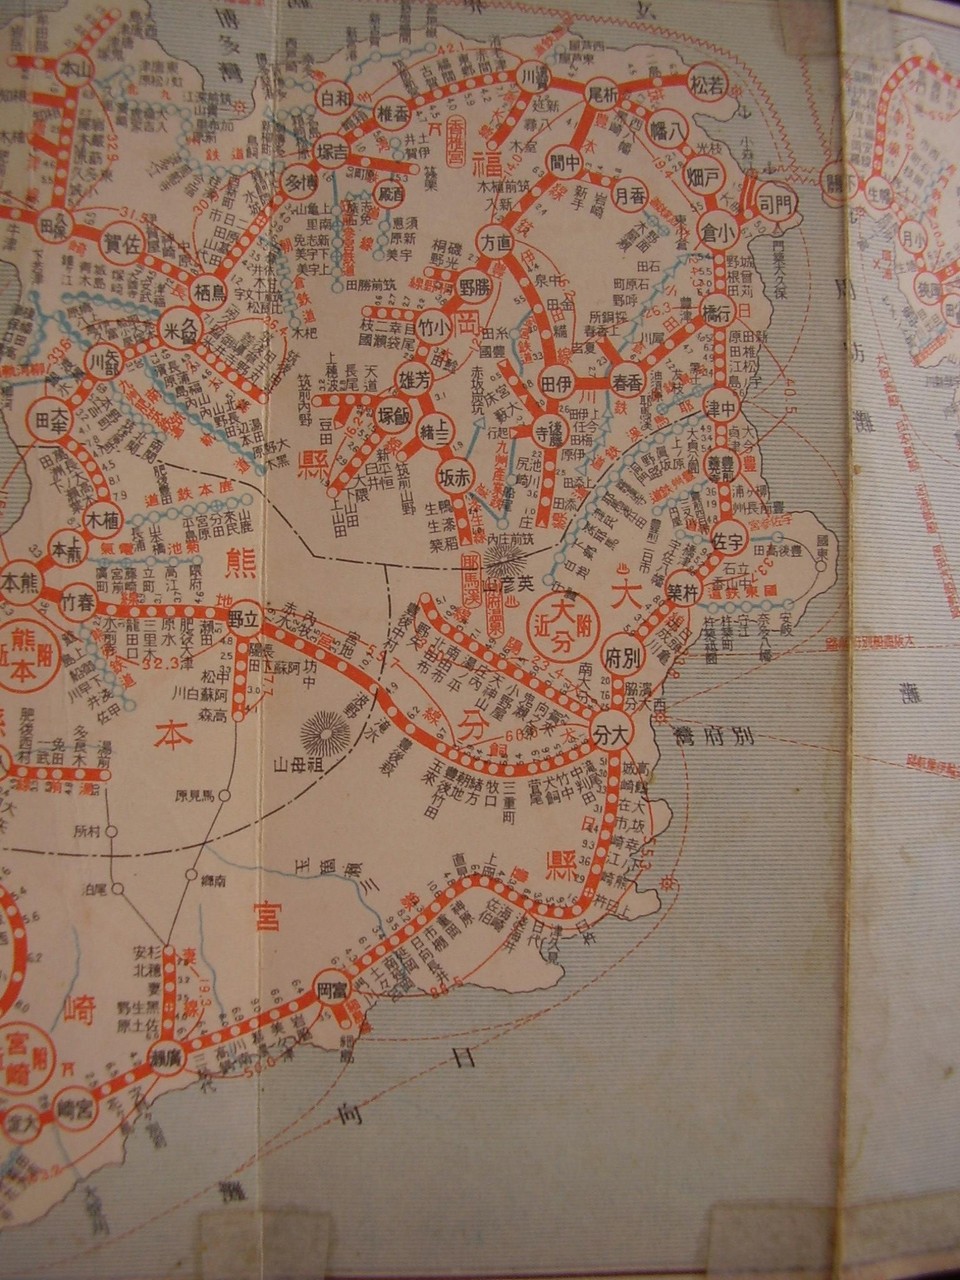 昭和5 32年鉄道路線図 サムネイル版７ 九州 高橋さんの写真館 分館